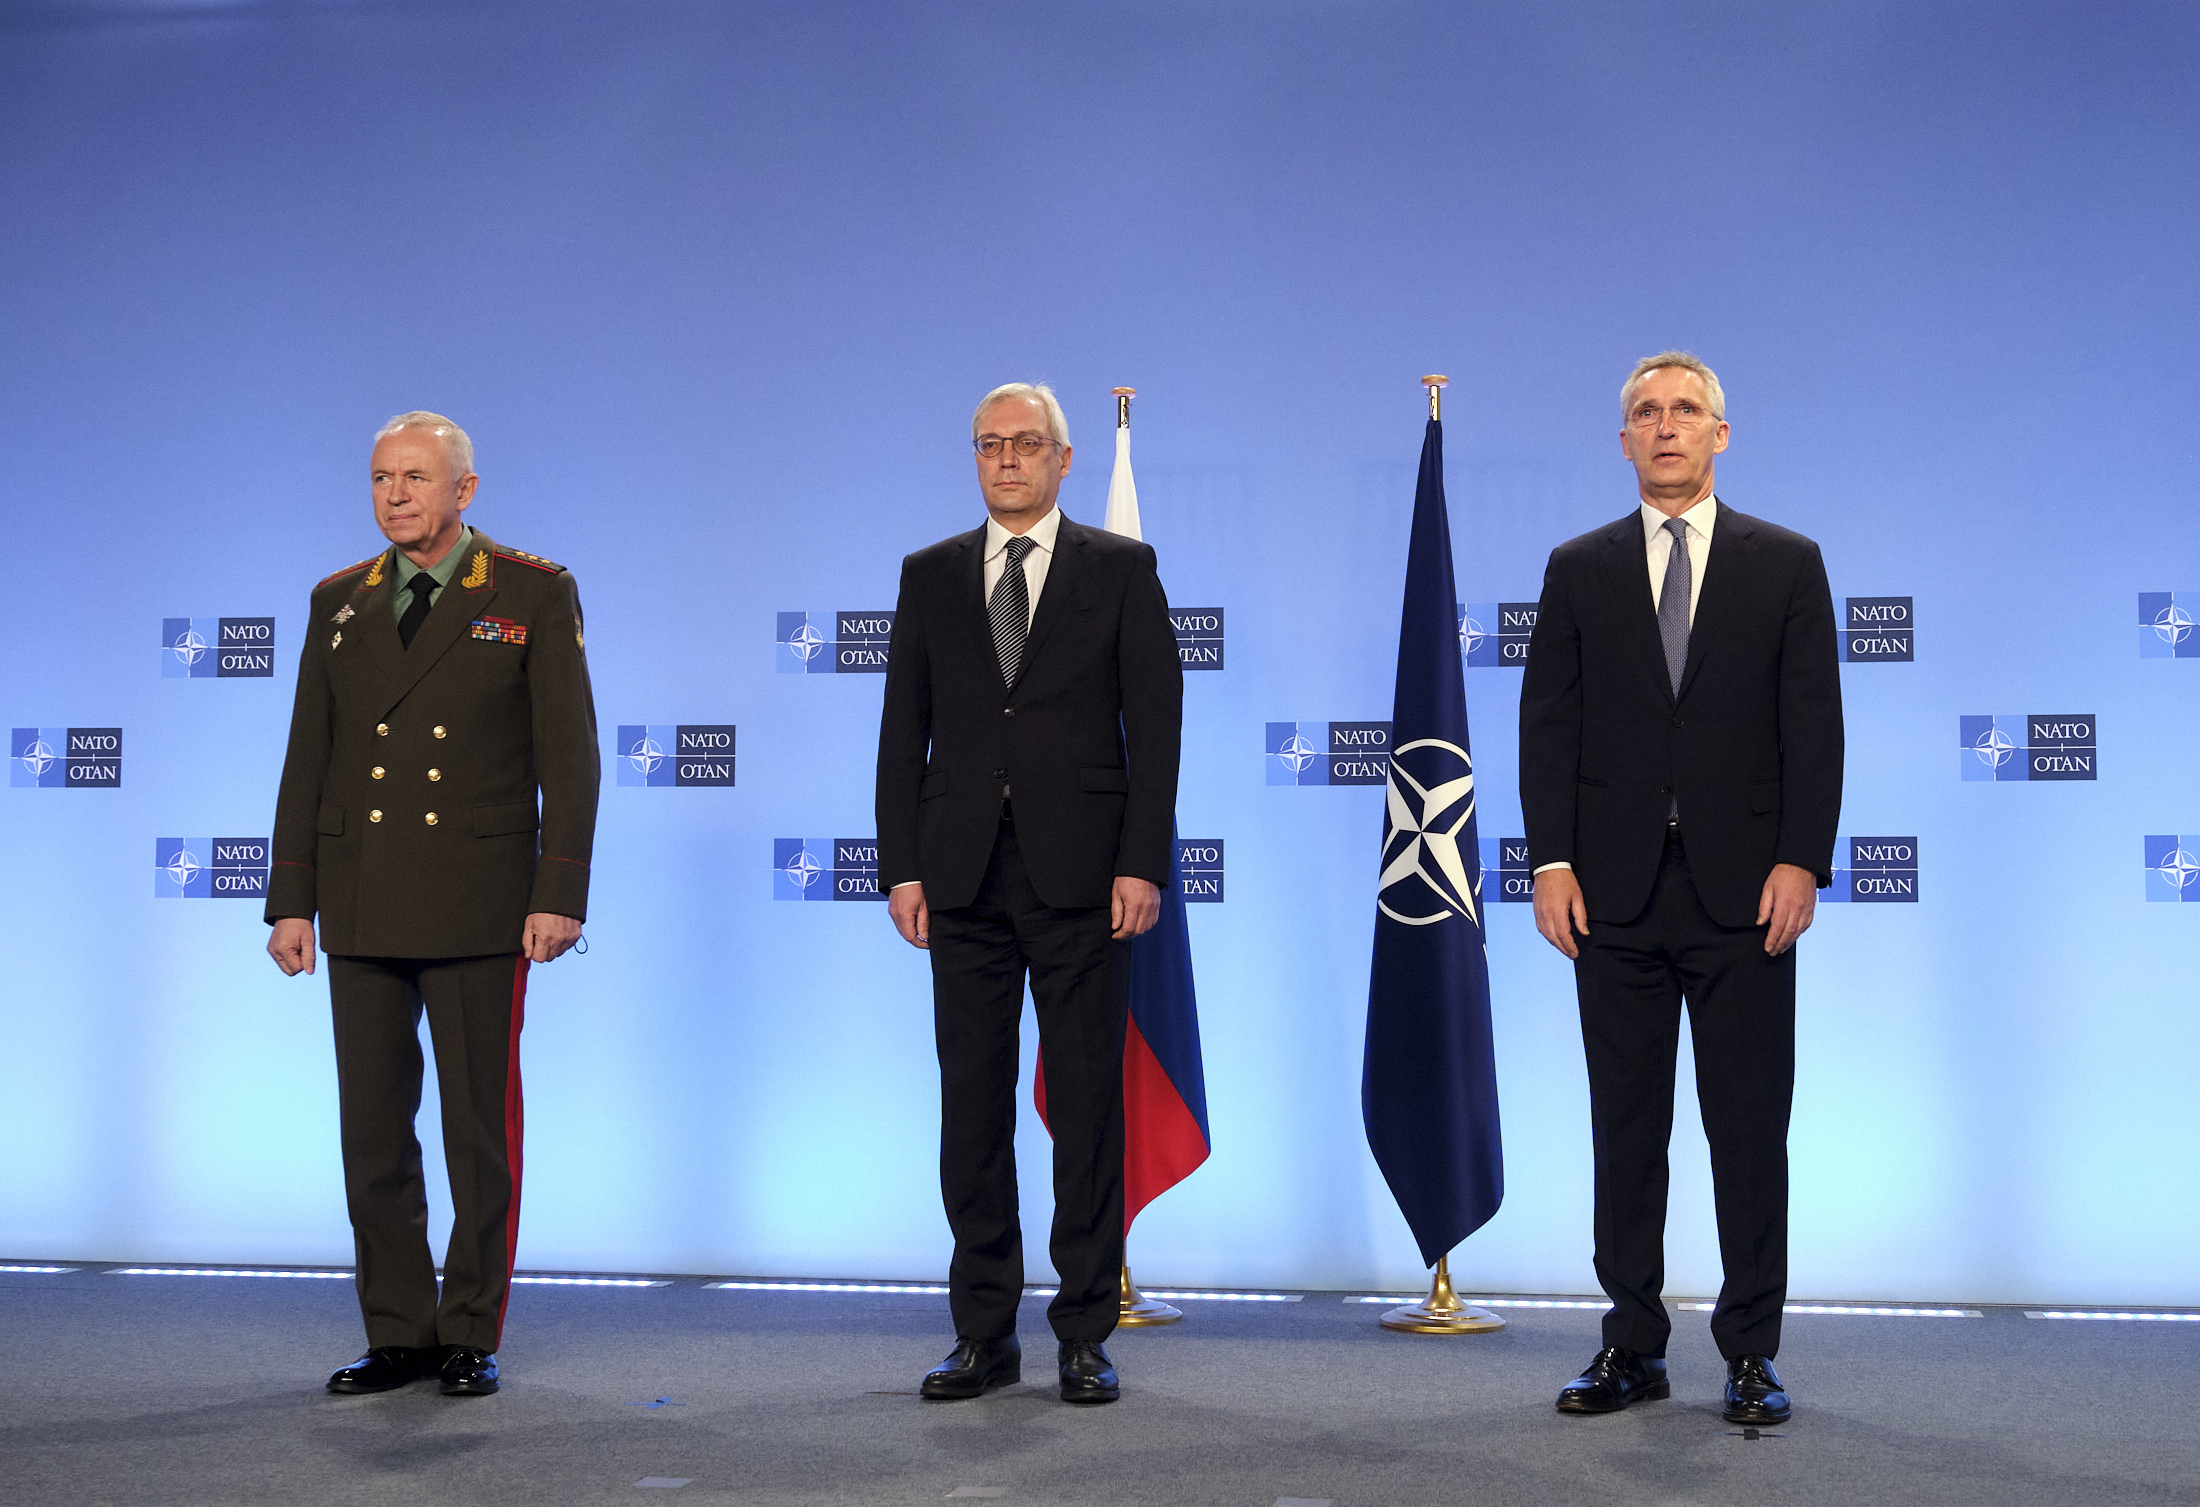 Переговоры с нато. НАТО И Россия. Совещание НАТО. Совет безопасности НАТО. НАТО фото.